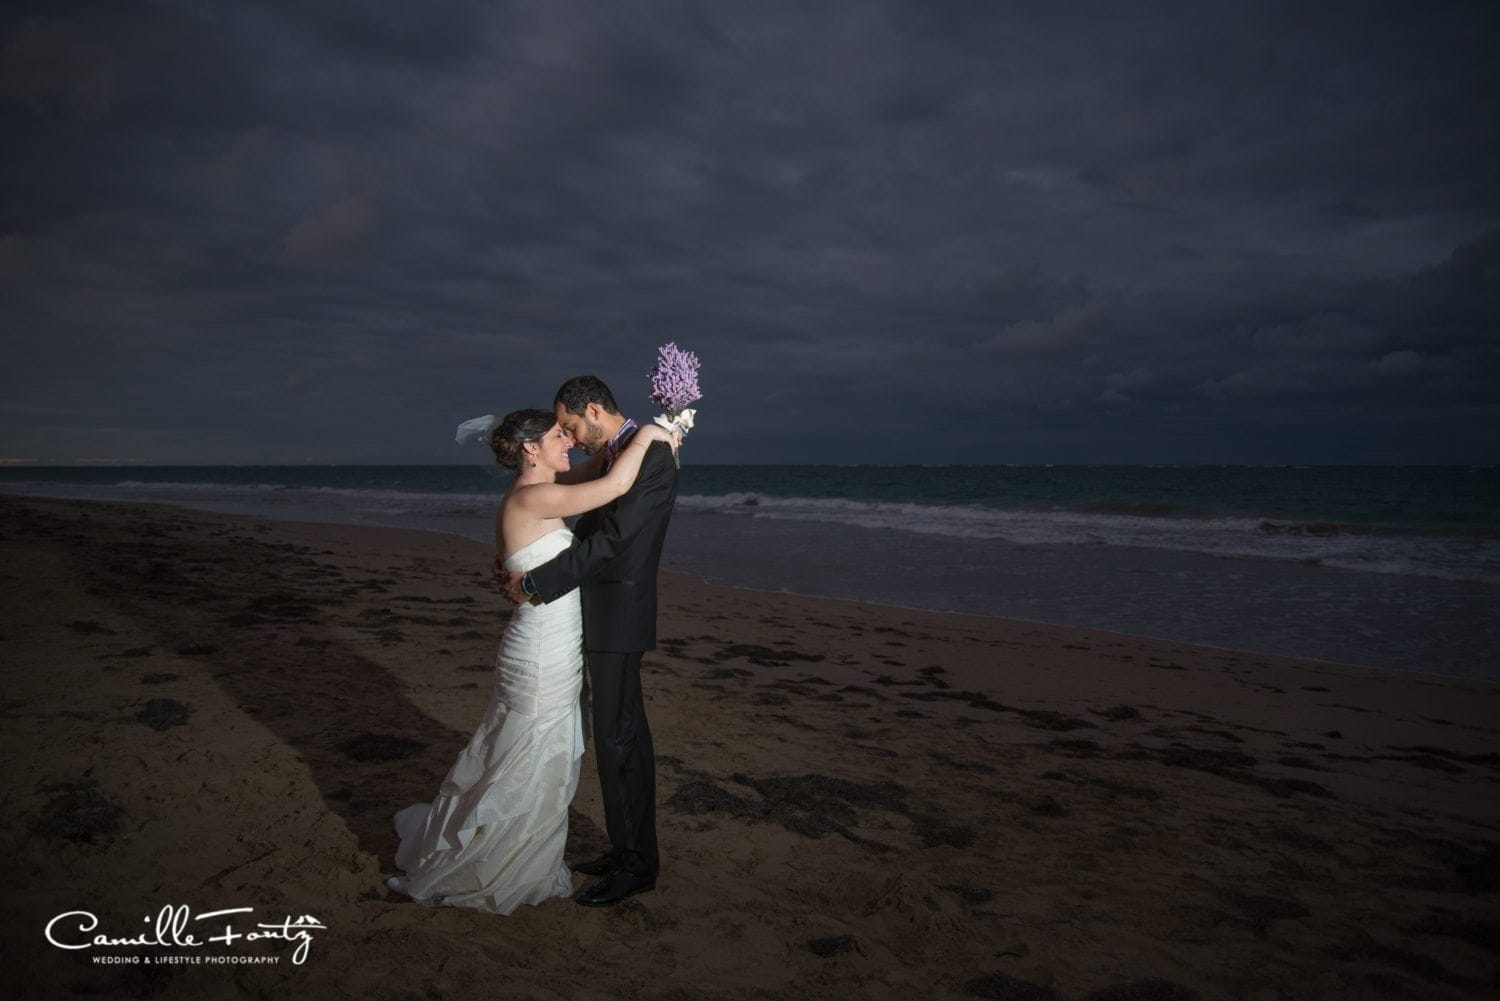 Hosteria del Mar wedding photography condado puerto rico